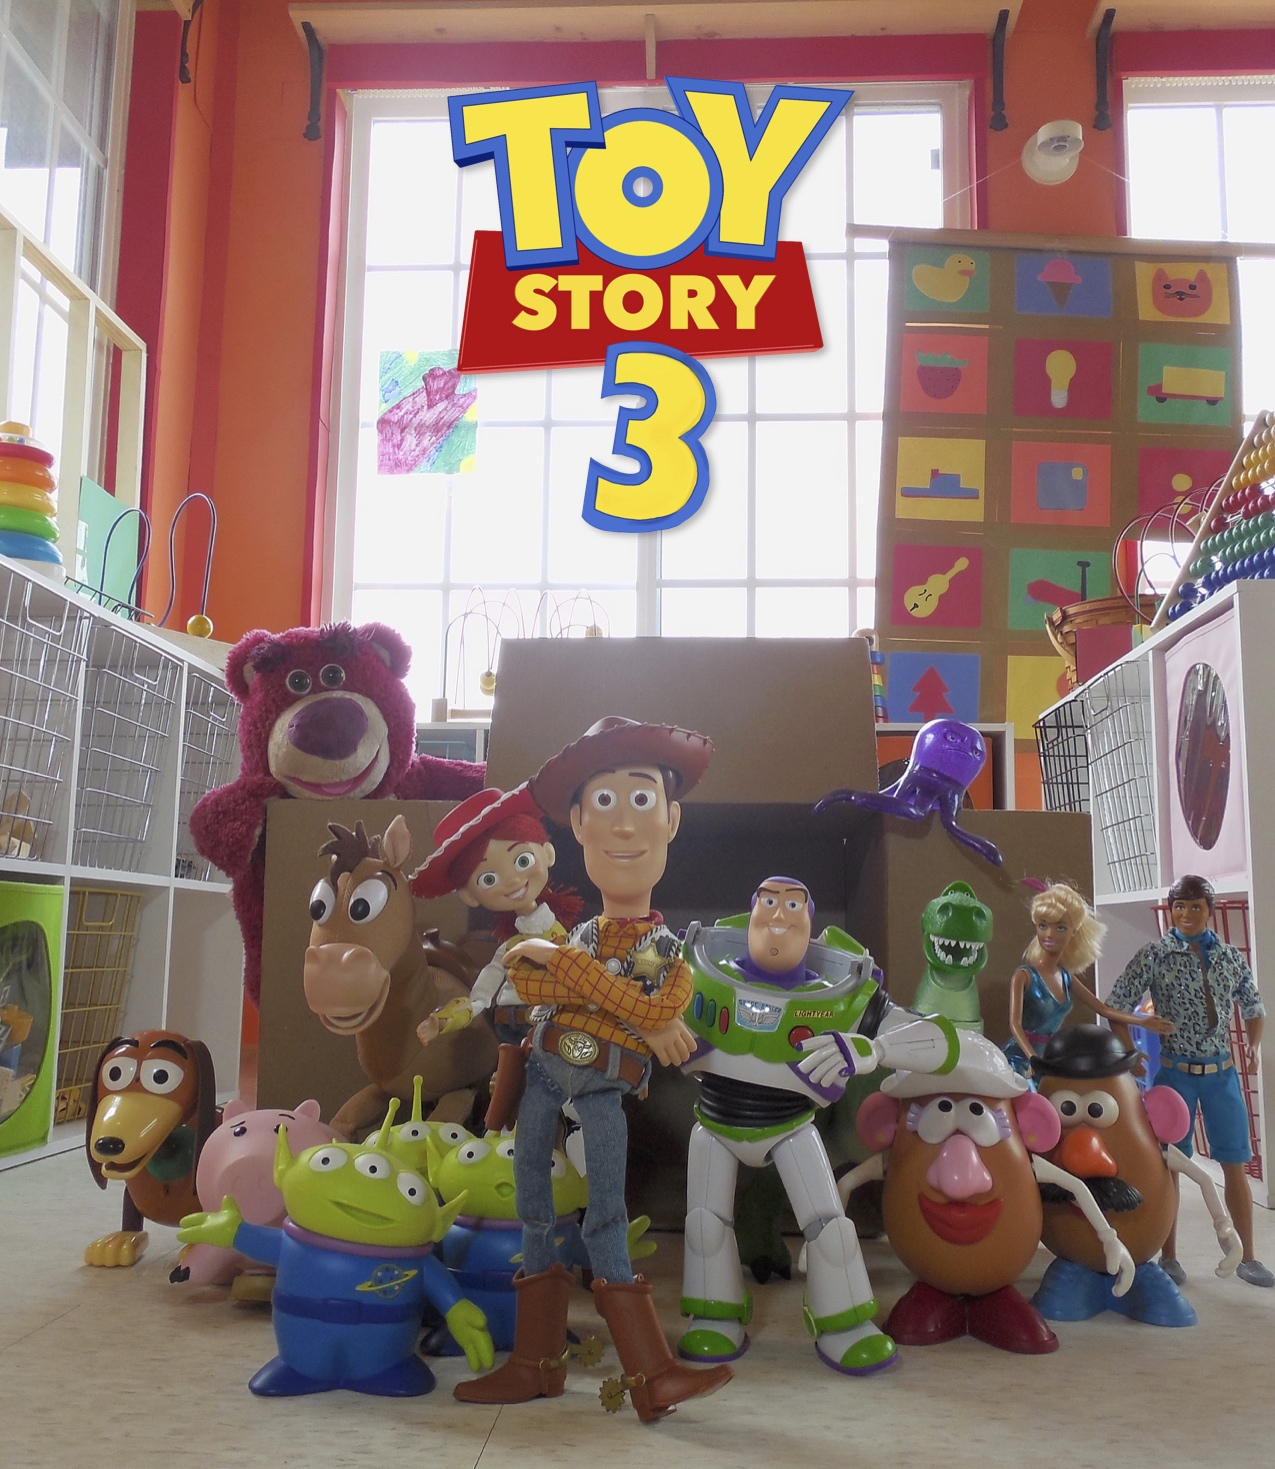 The People Behind Pixar's 'Toy Story 3' : NPR